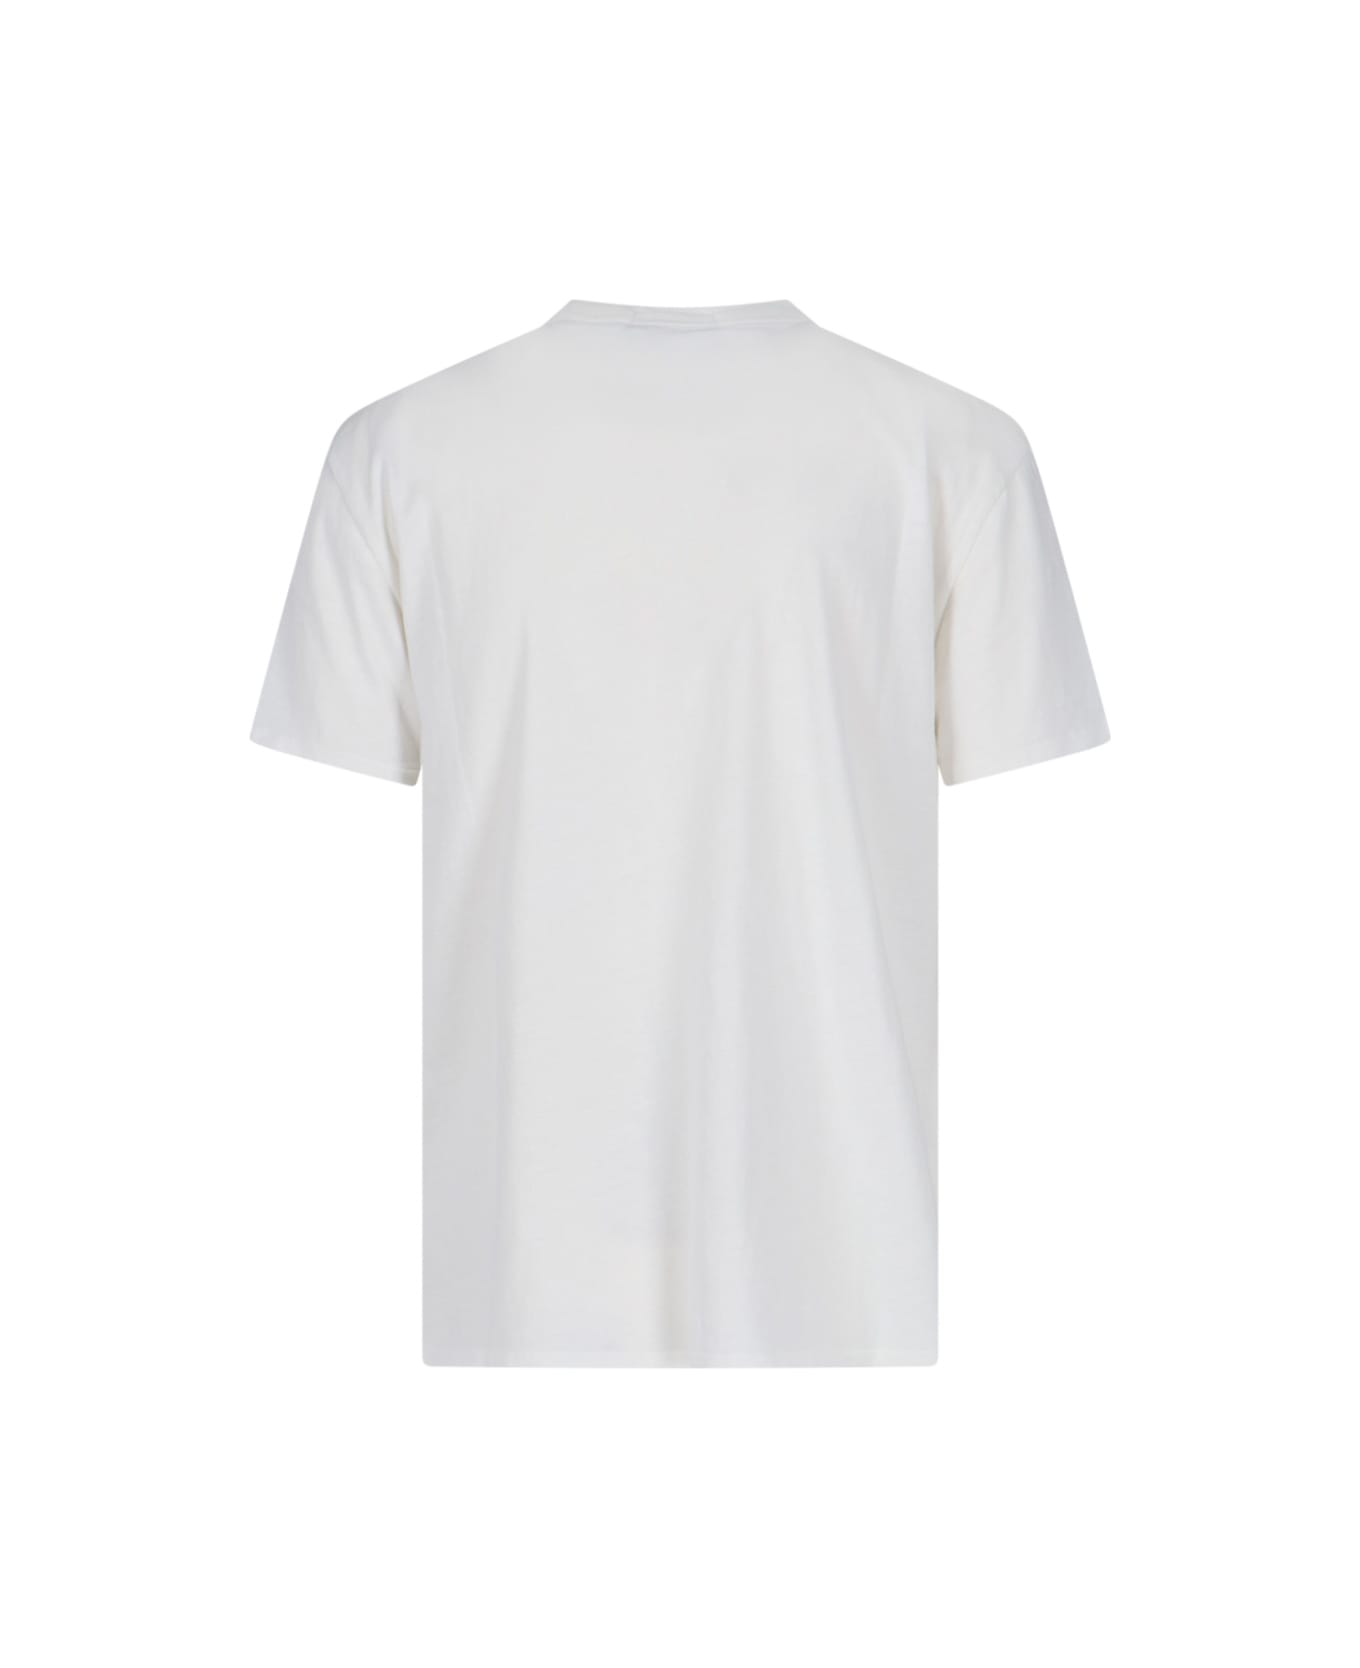 Polo Ralph Lauren Printed T-shirt - White